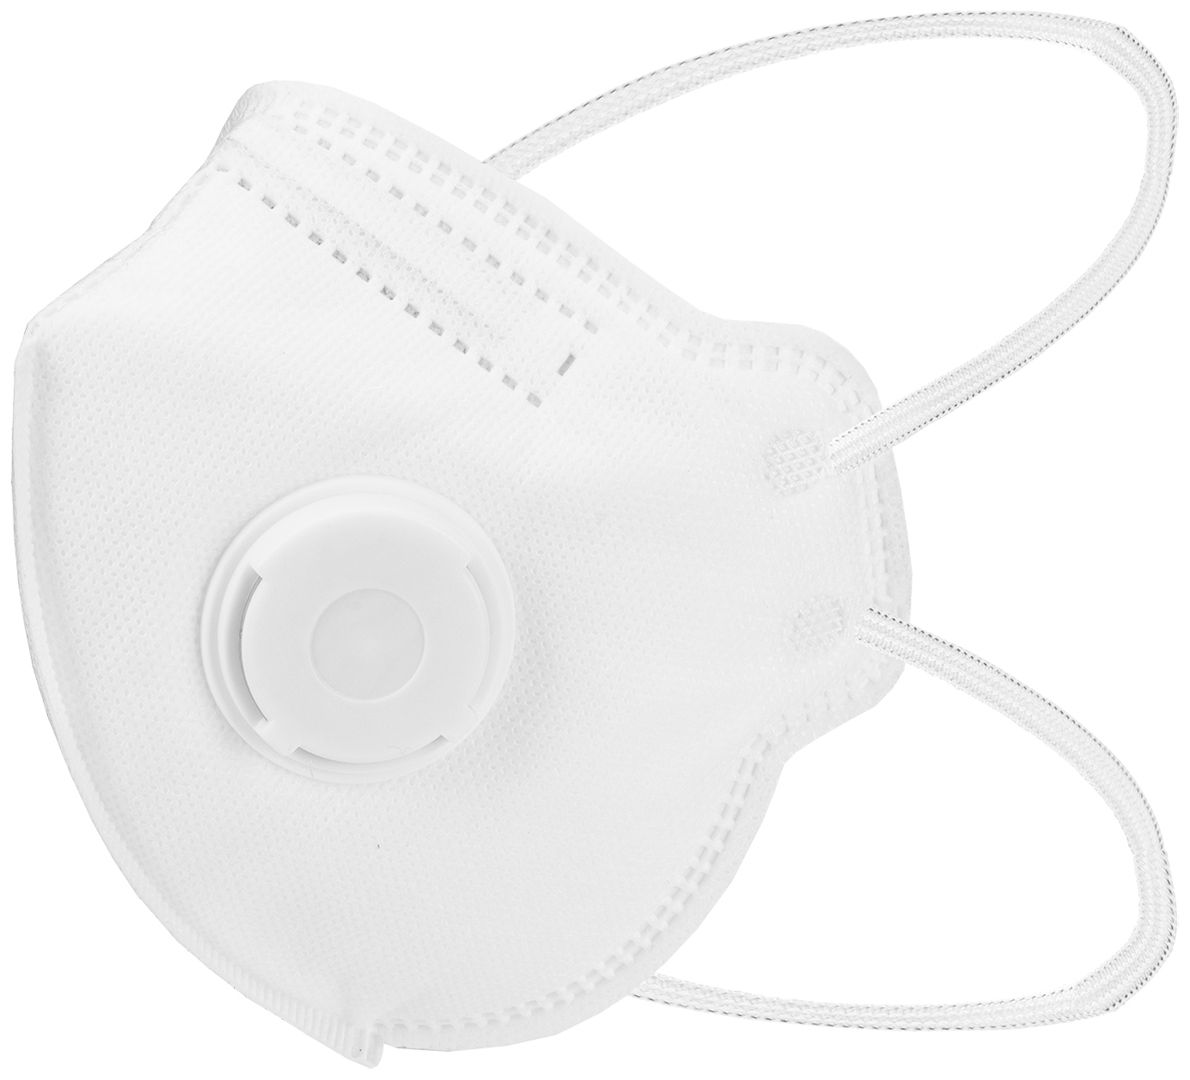 ABVERKAUF: Staubmaske FFP3-Staubschutzmaske - Atemmaske mit Ventil - 10 Stk.